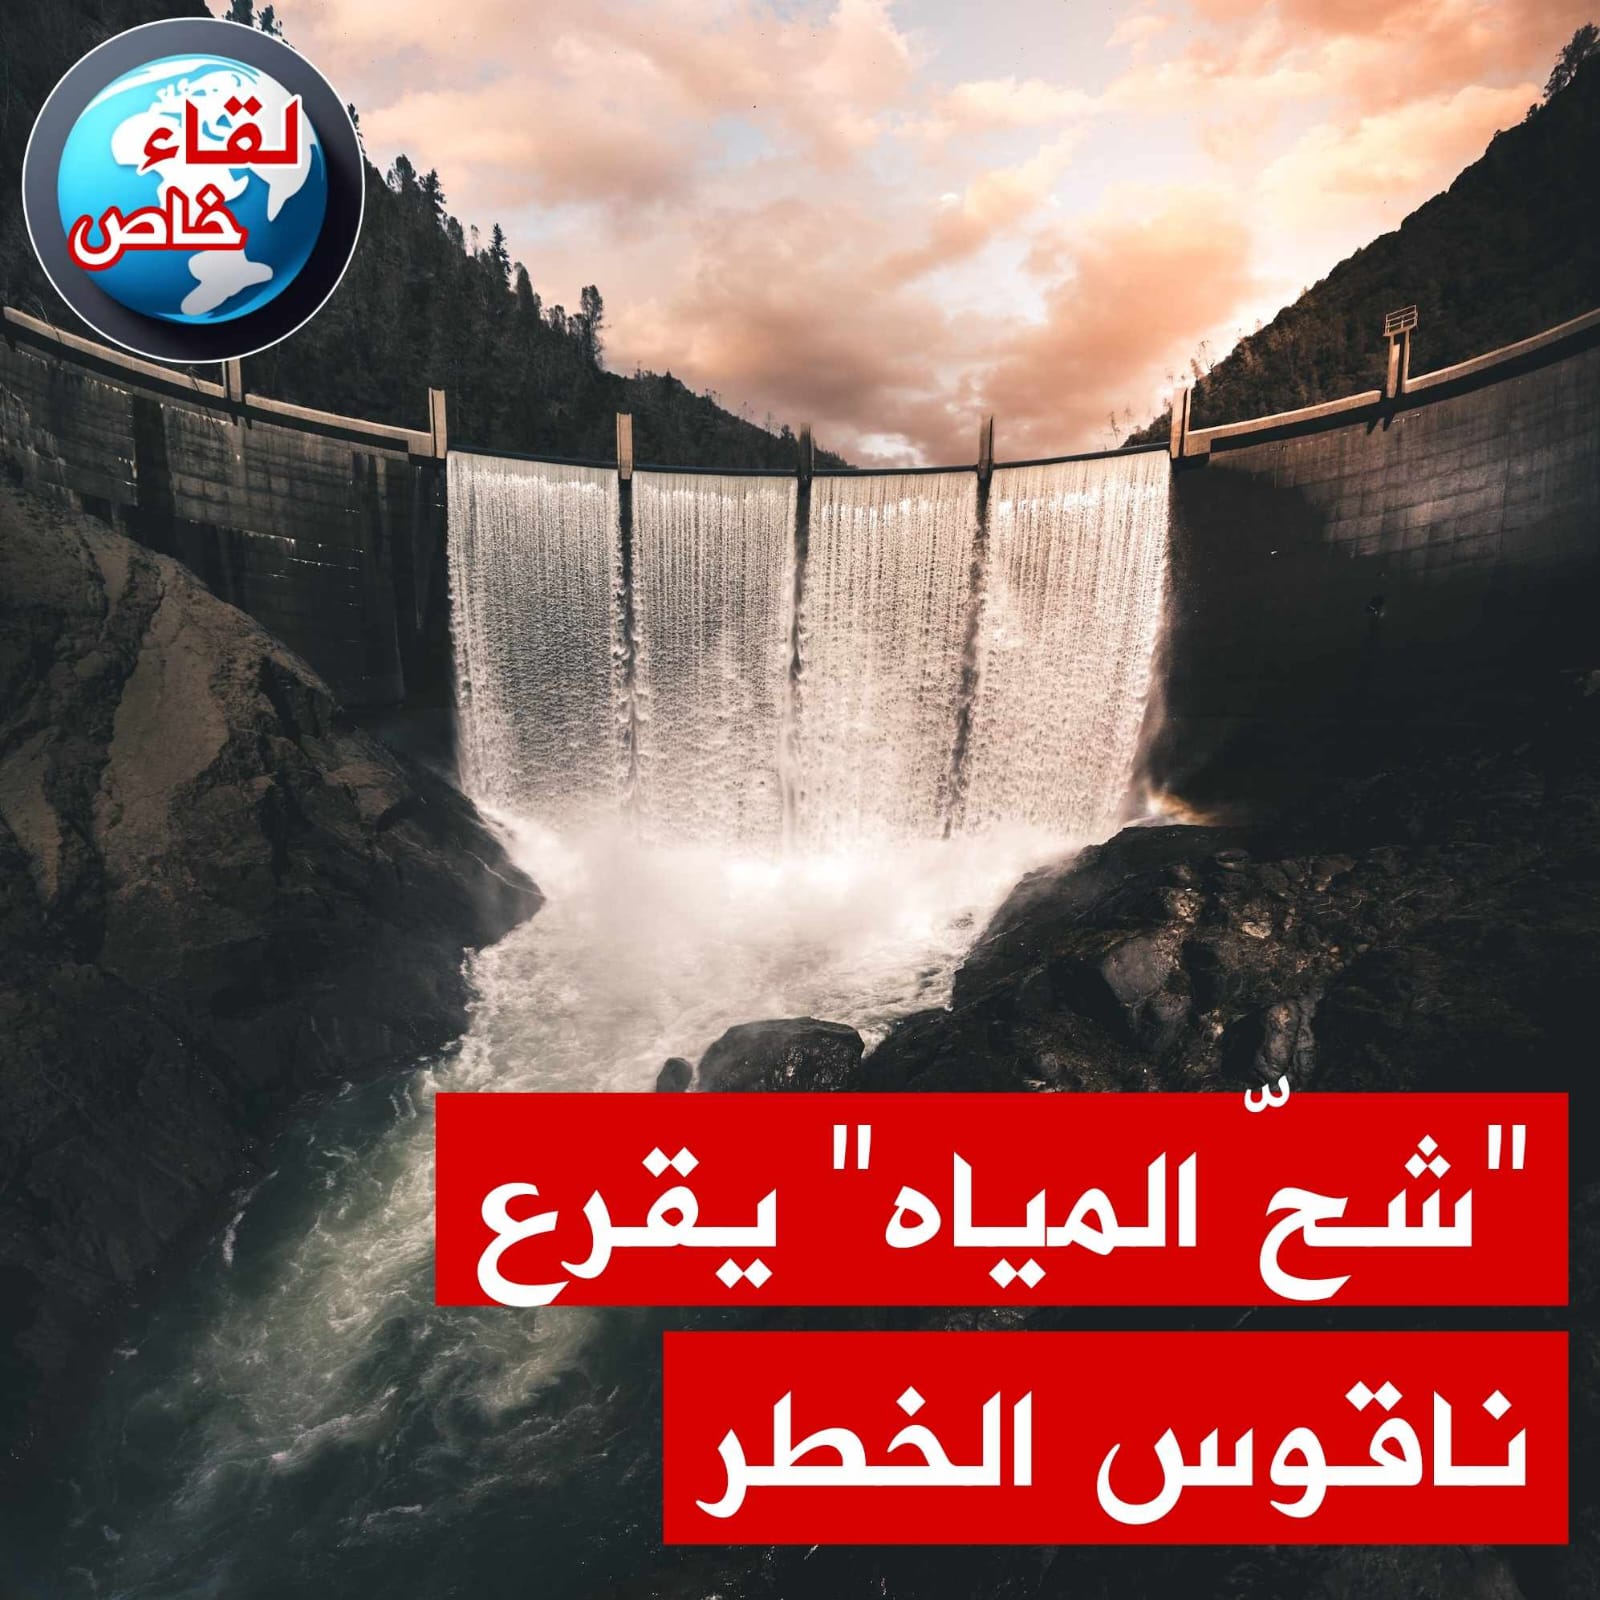 "الصباح دجيتال" تفتح ملف شح المياه وخطره على مستقبل تونس في لقاء مع رئيس منظمة الدفاع عن المستهلك